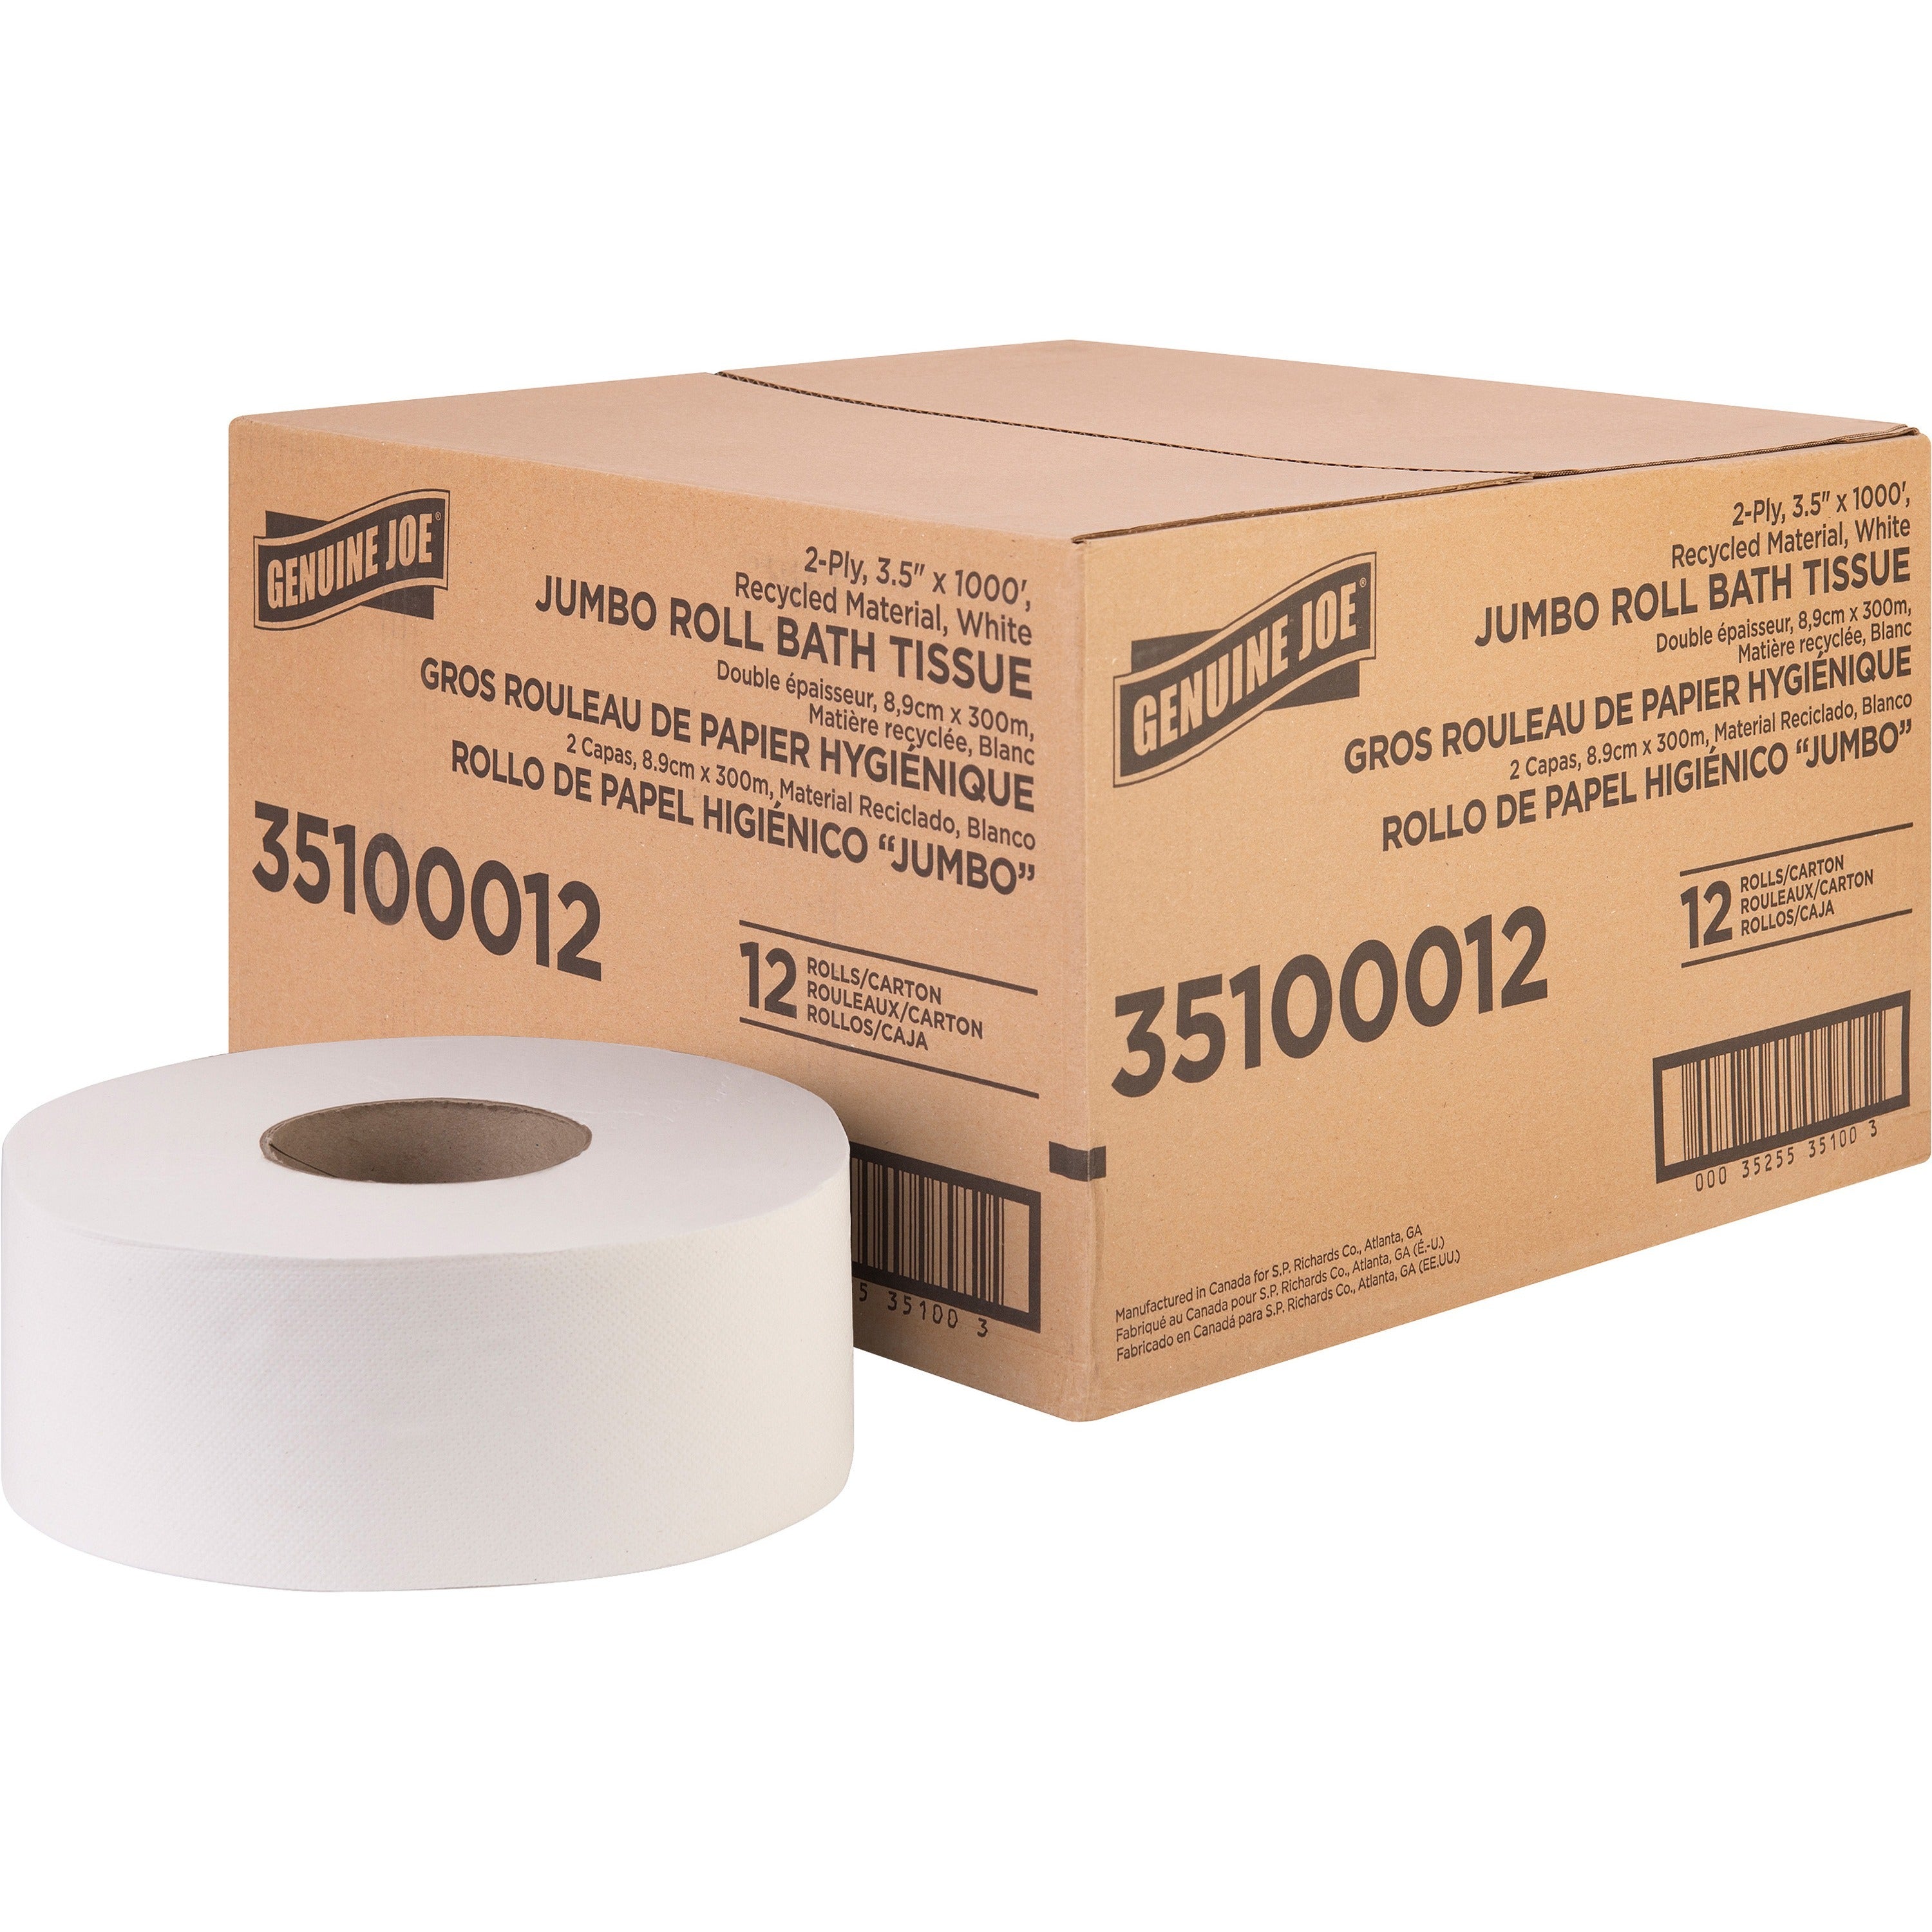 genuine-joe-jumbo-jr-dispenser-bath-tissue-roll-2-ply-350-x-1000-ft-888-roll-diameter-white-fiber-sewer-safe-septic-safe-for-bathroom-12-carton_gjo35100012 - 1